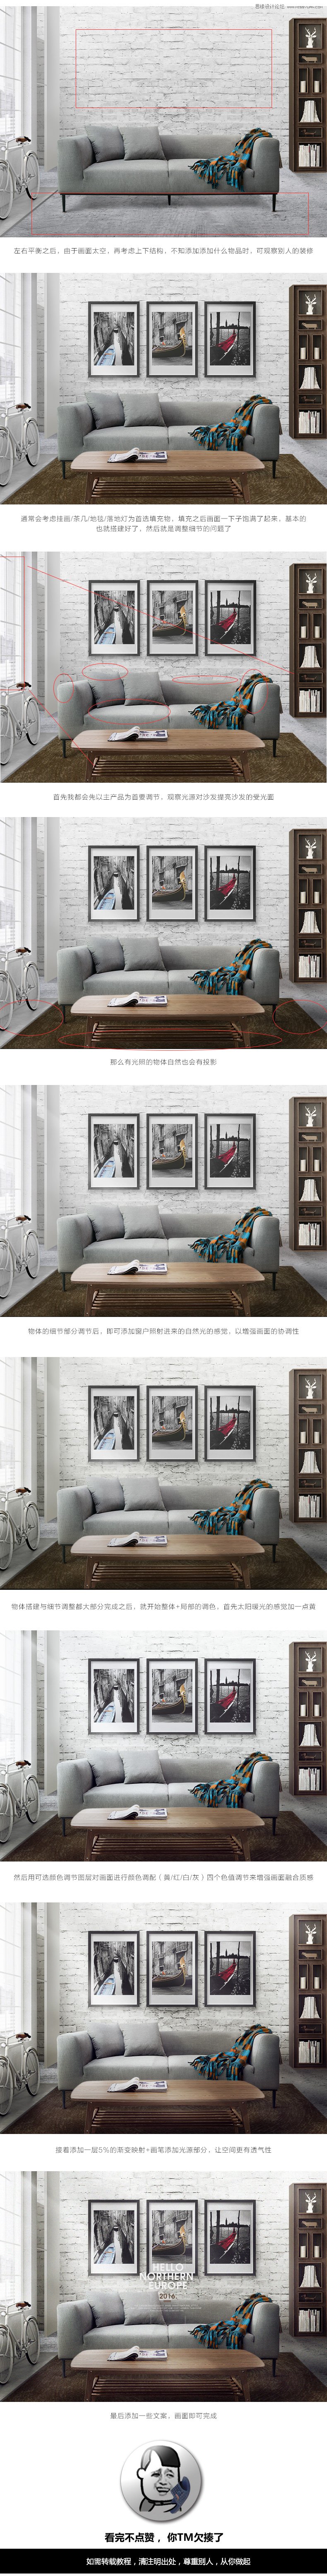 Photoshop合成欧式小户型沙发摆放场景图,PS教程,素材中国网